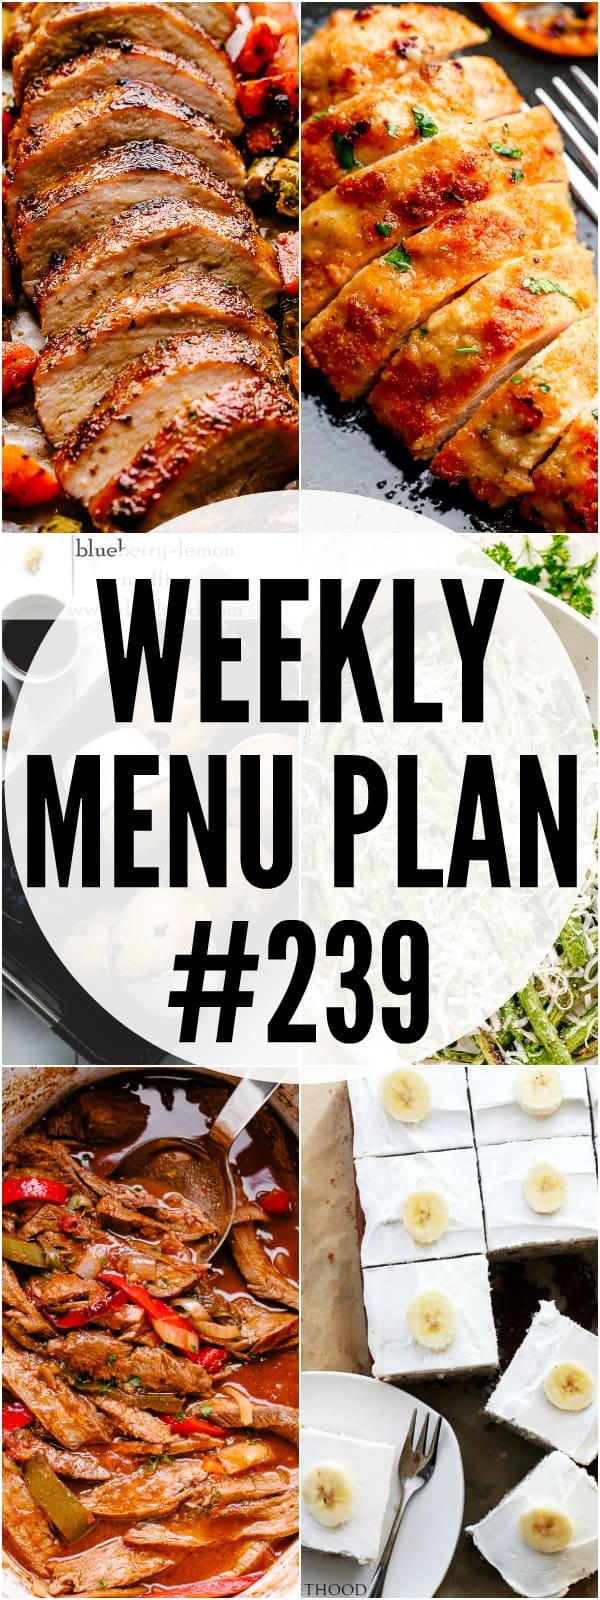 weekly menu plan 239 pin image